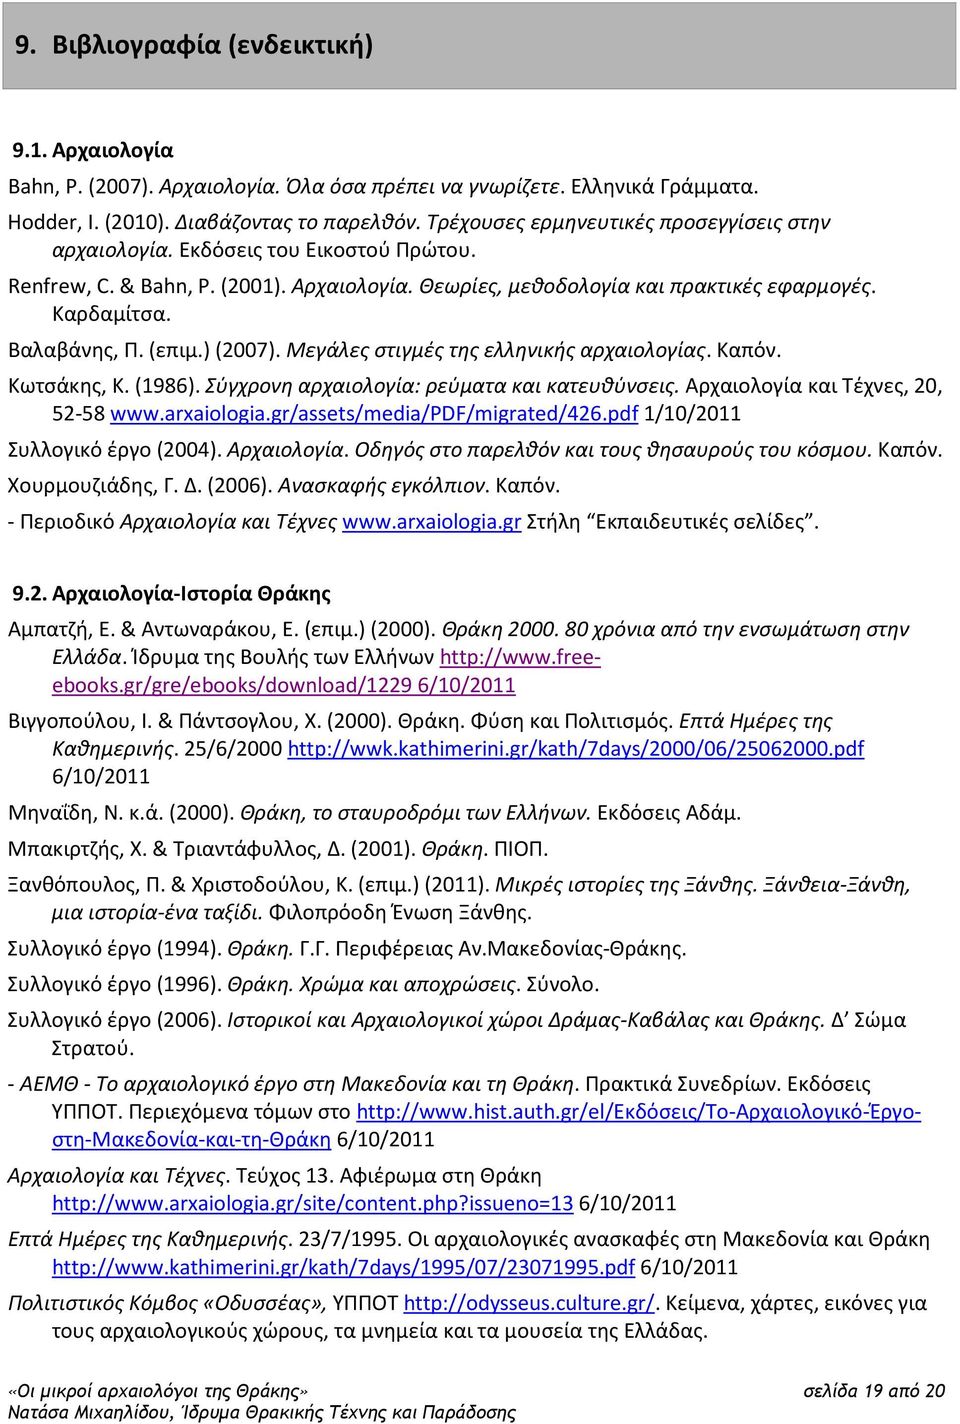 (επιμ.) (2007). Μεγάλες στιγμές της ελληνικής αρχαιολογίας. Καπόν. Κωτσάκης, Κ. (1986). Σύγχρονη αρχαιολογία: ρεύματα και κατευθύνσεις. Αρχαιολογία και Τέχνες, 20, 52-58 www.arxaiologia.